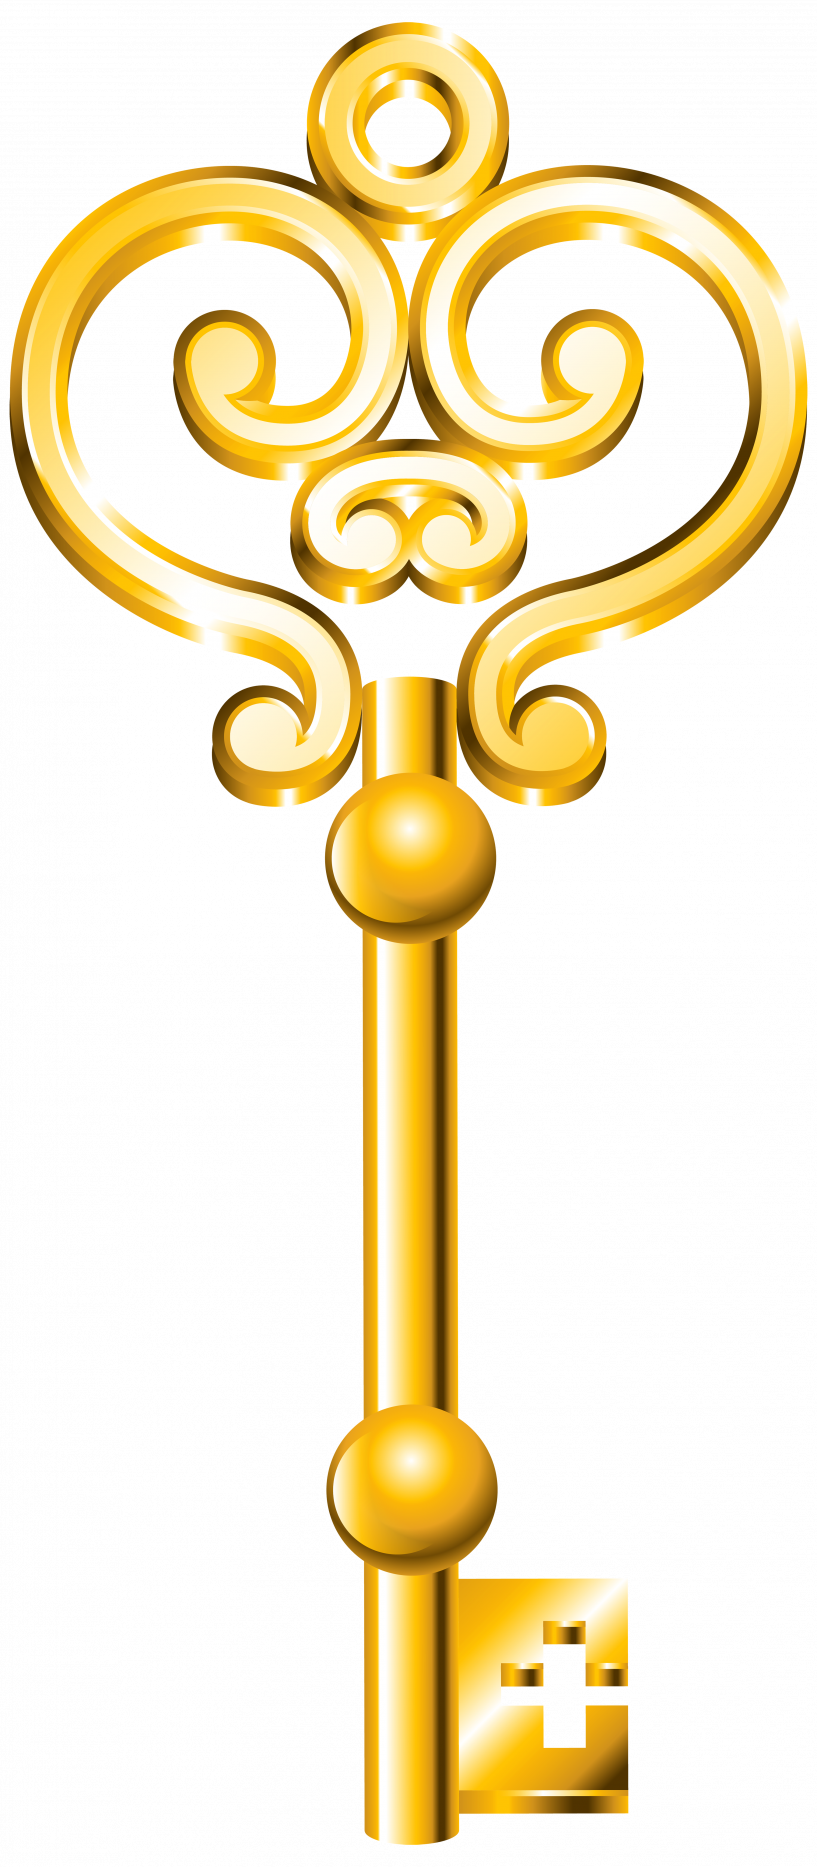 clipart key royal key